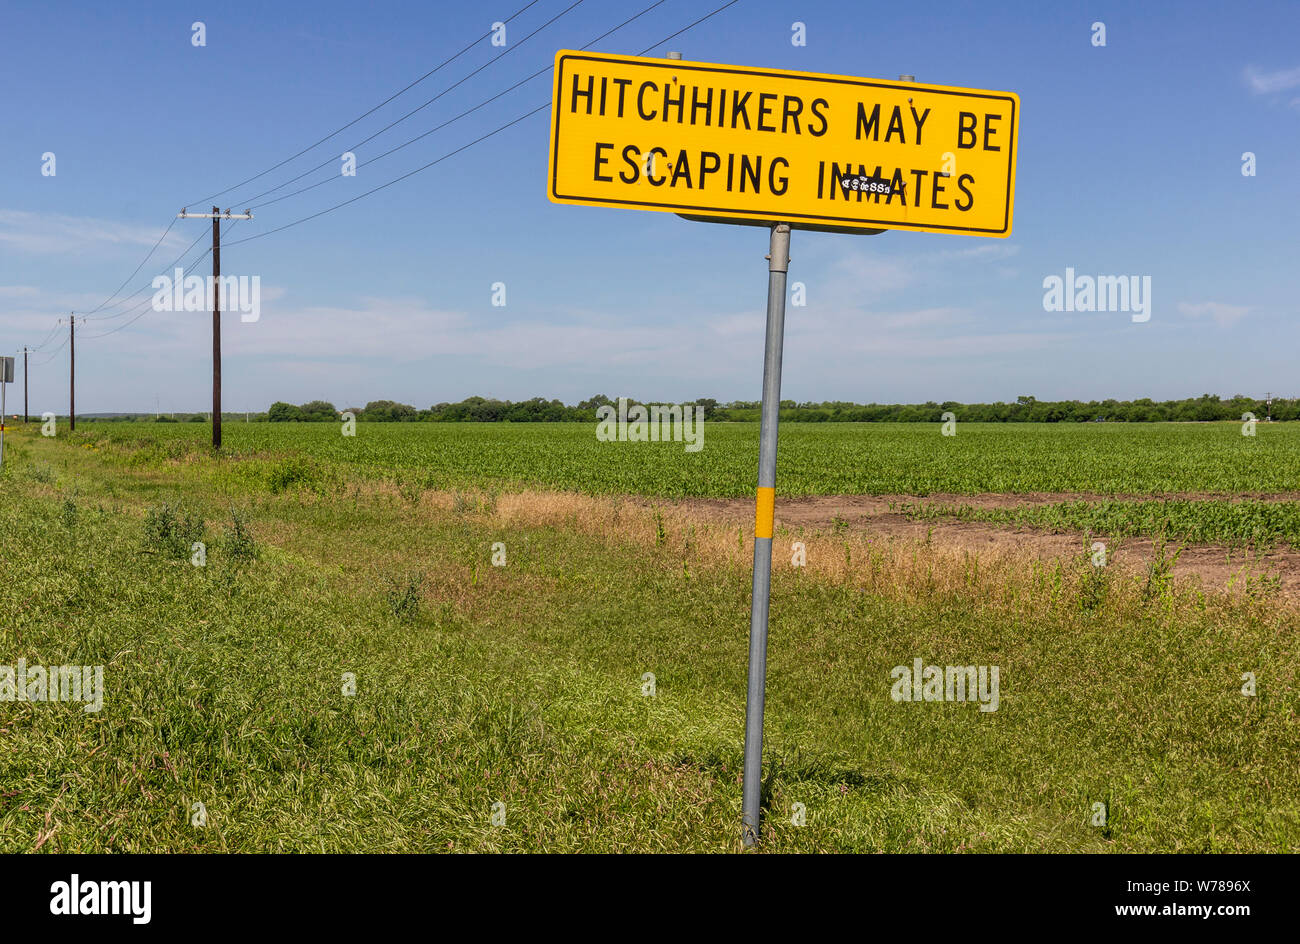 Hitchhikers may be escaping inmates sign. Between Hondo and Sabinal, Texas, USA Stock Photo